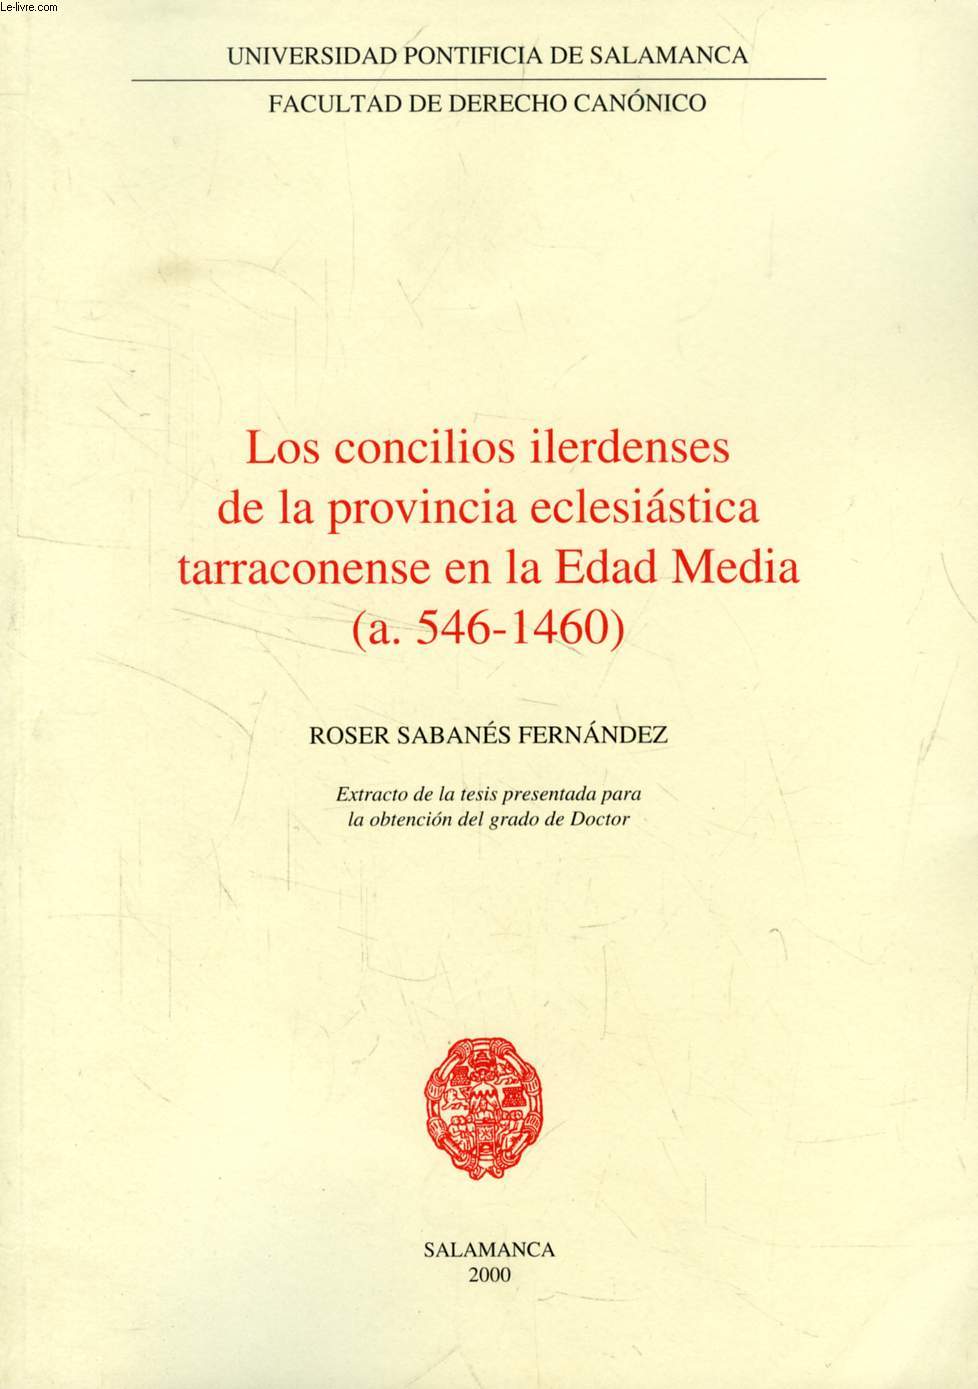 LOS CONCILIOS ILERDENSES DE LA PROVINCIA ECLESIASTICA TARRACONENSE EN LA EDAD MEDIA (a. 546-1460) (EXTRACTO DE LA TESIS)